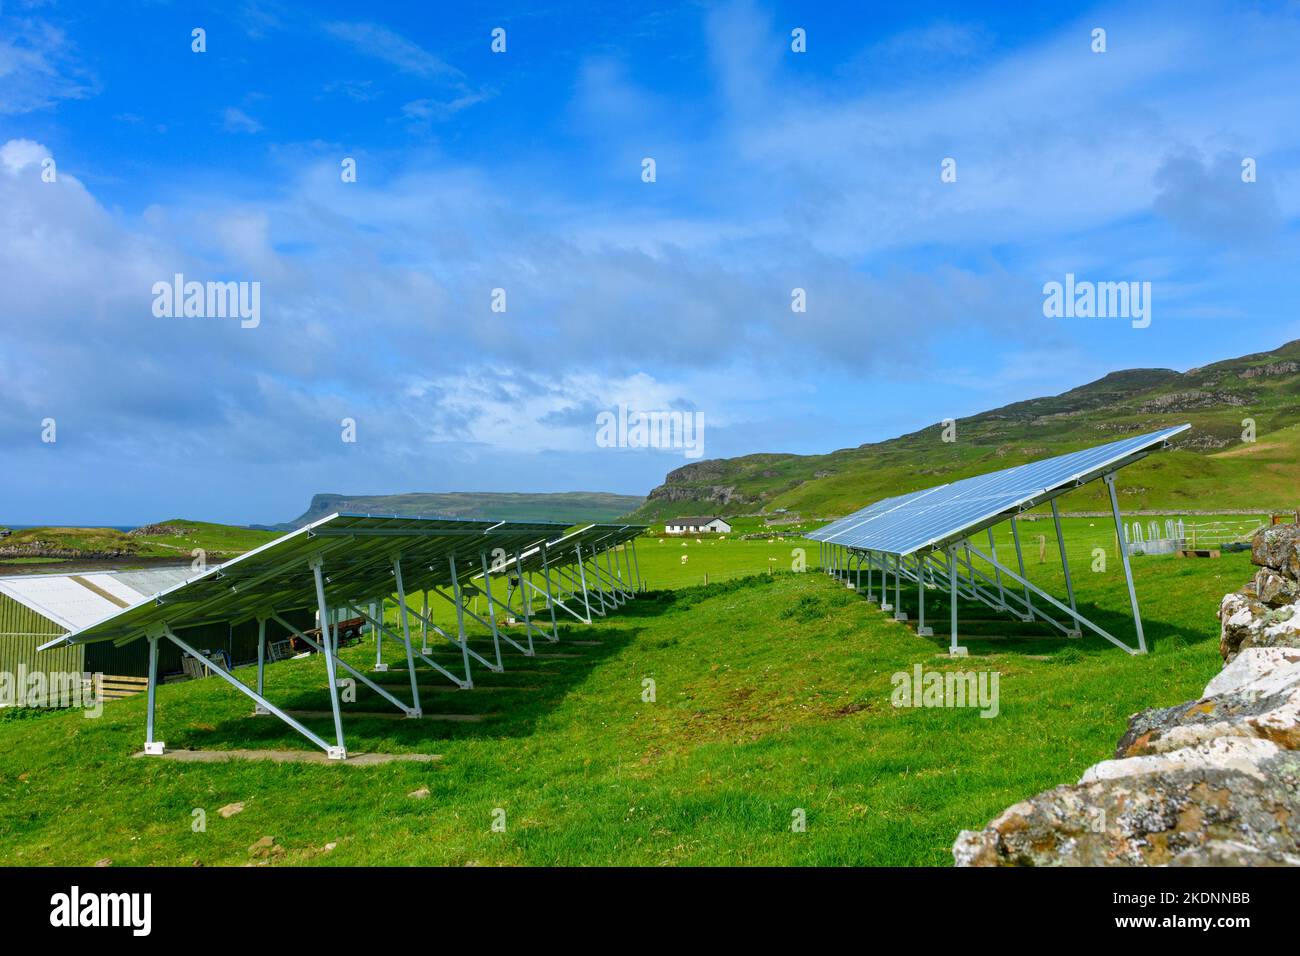 Panneaux solaires dans un champ au village de A' Chill, île de Canna, Écosse, Royaume-Uni. Banque D'Images